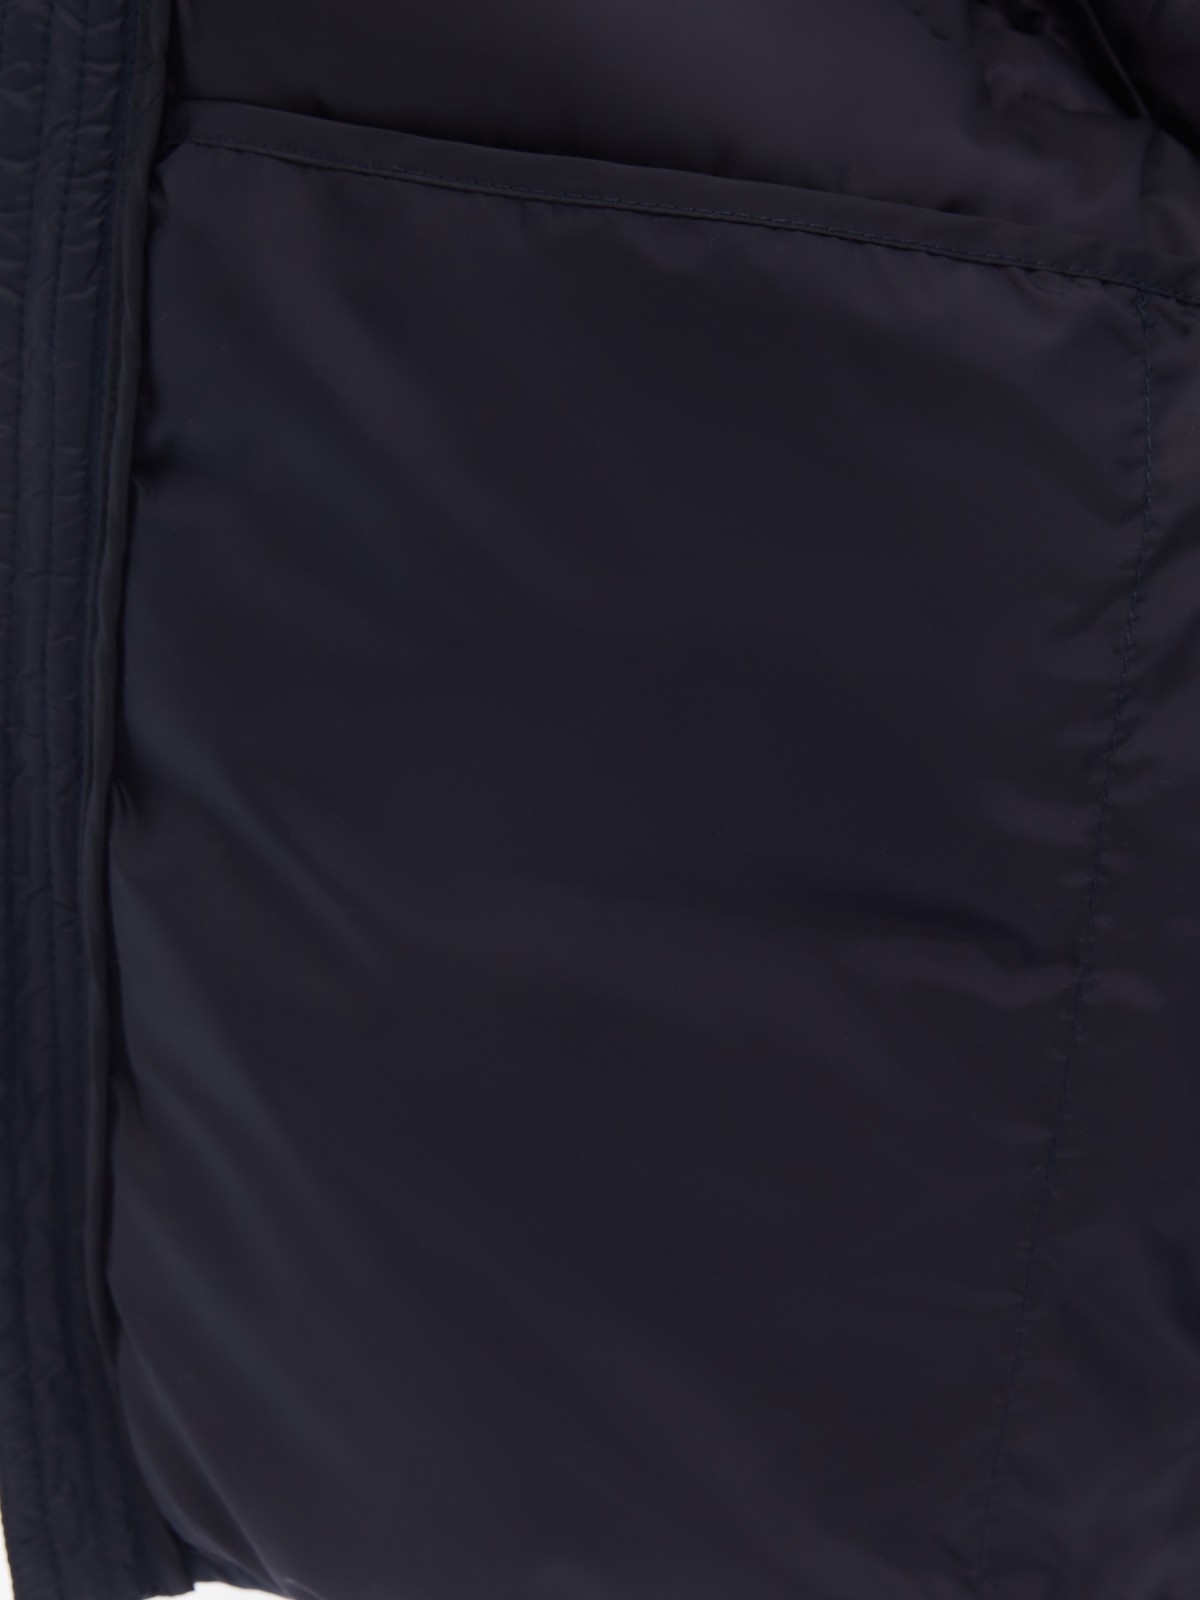 Лёгкая утеплённая стёганая куртка на молнии с капюшоном zolla 01412512N074, цвет синий, размер M - фото 5